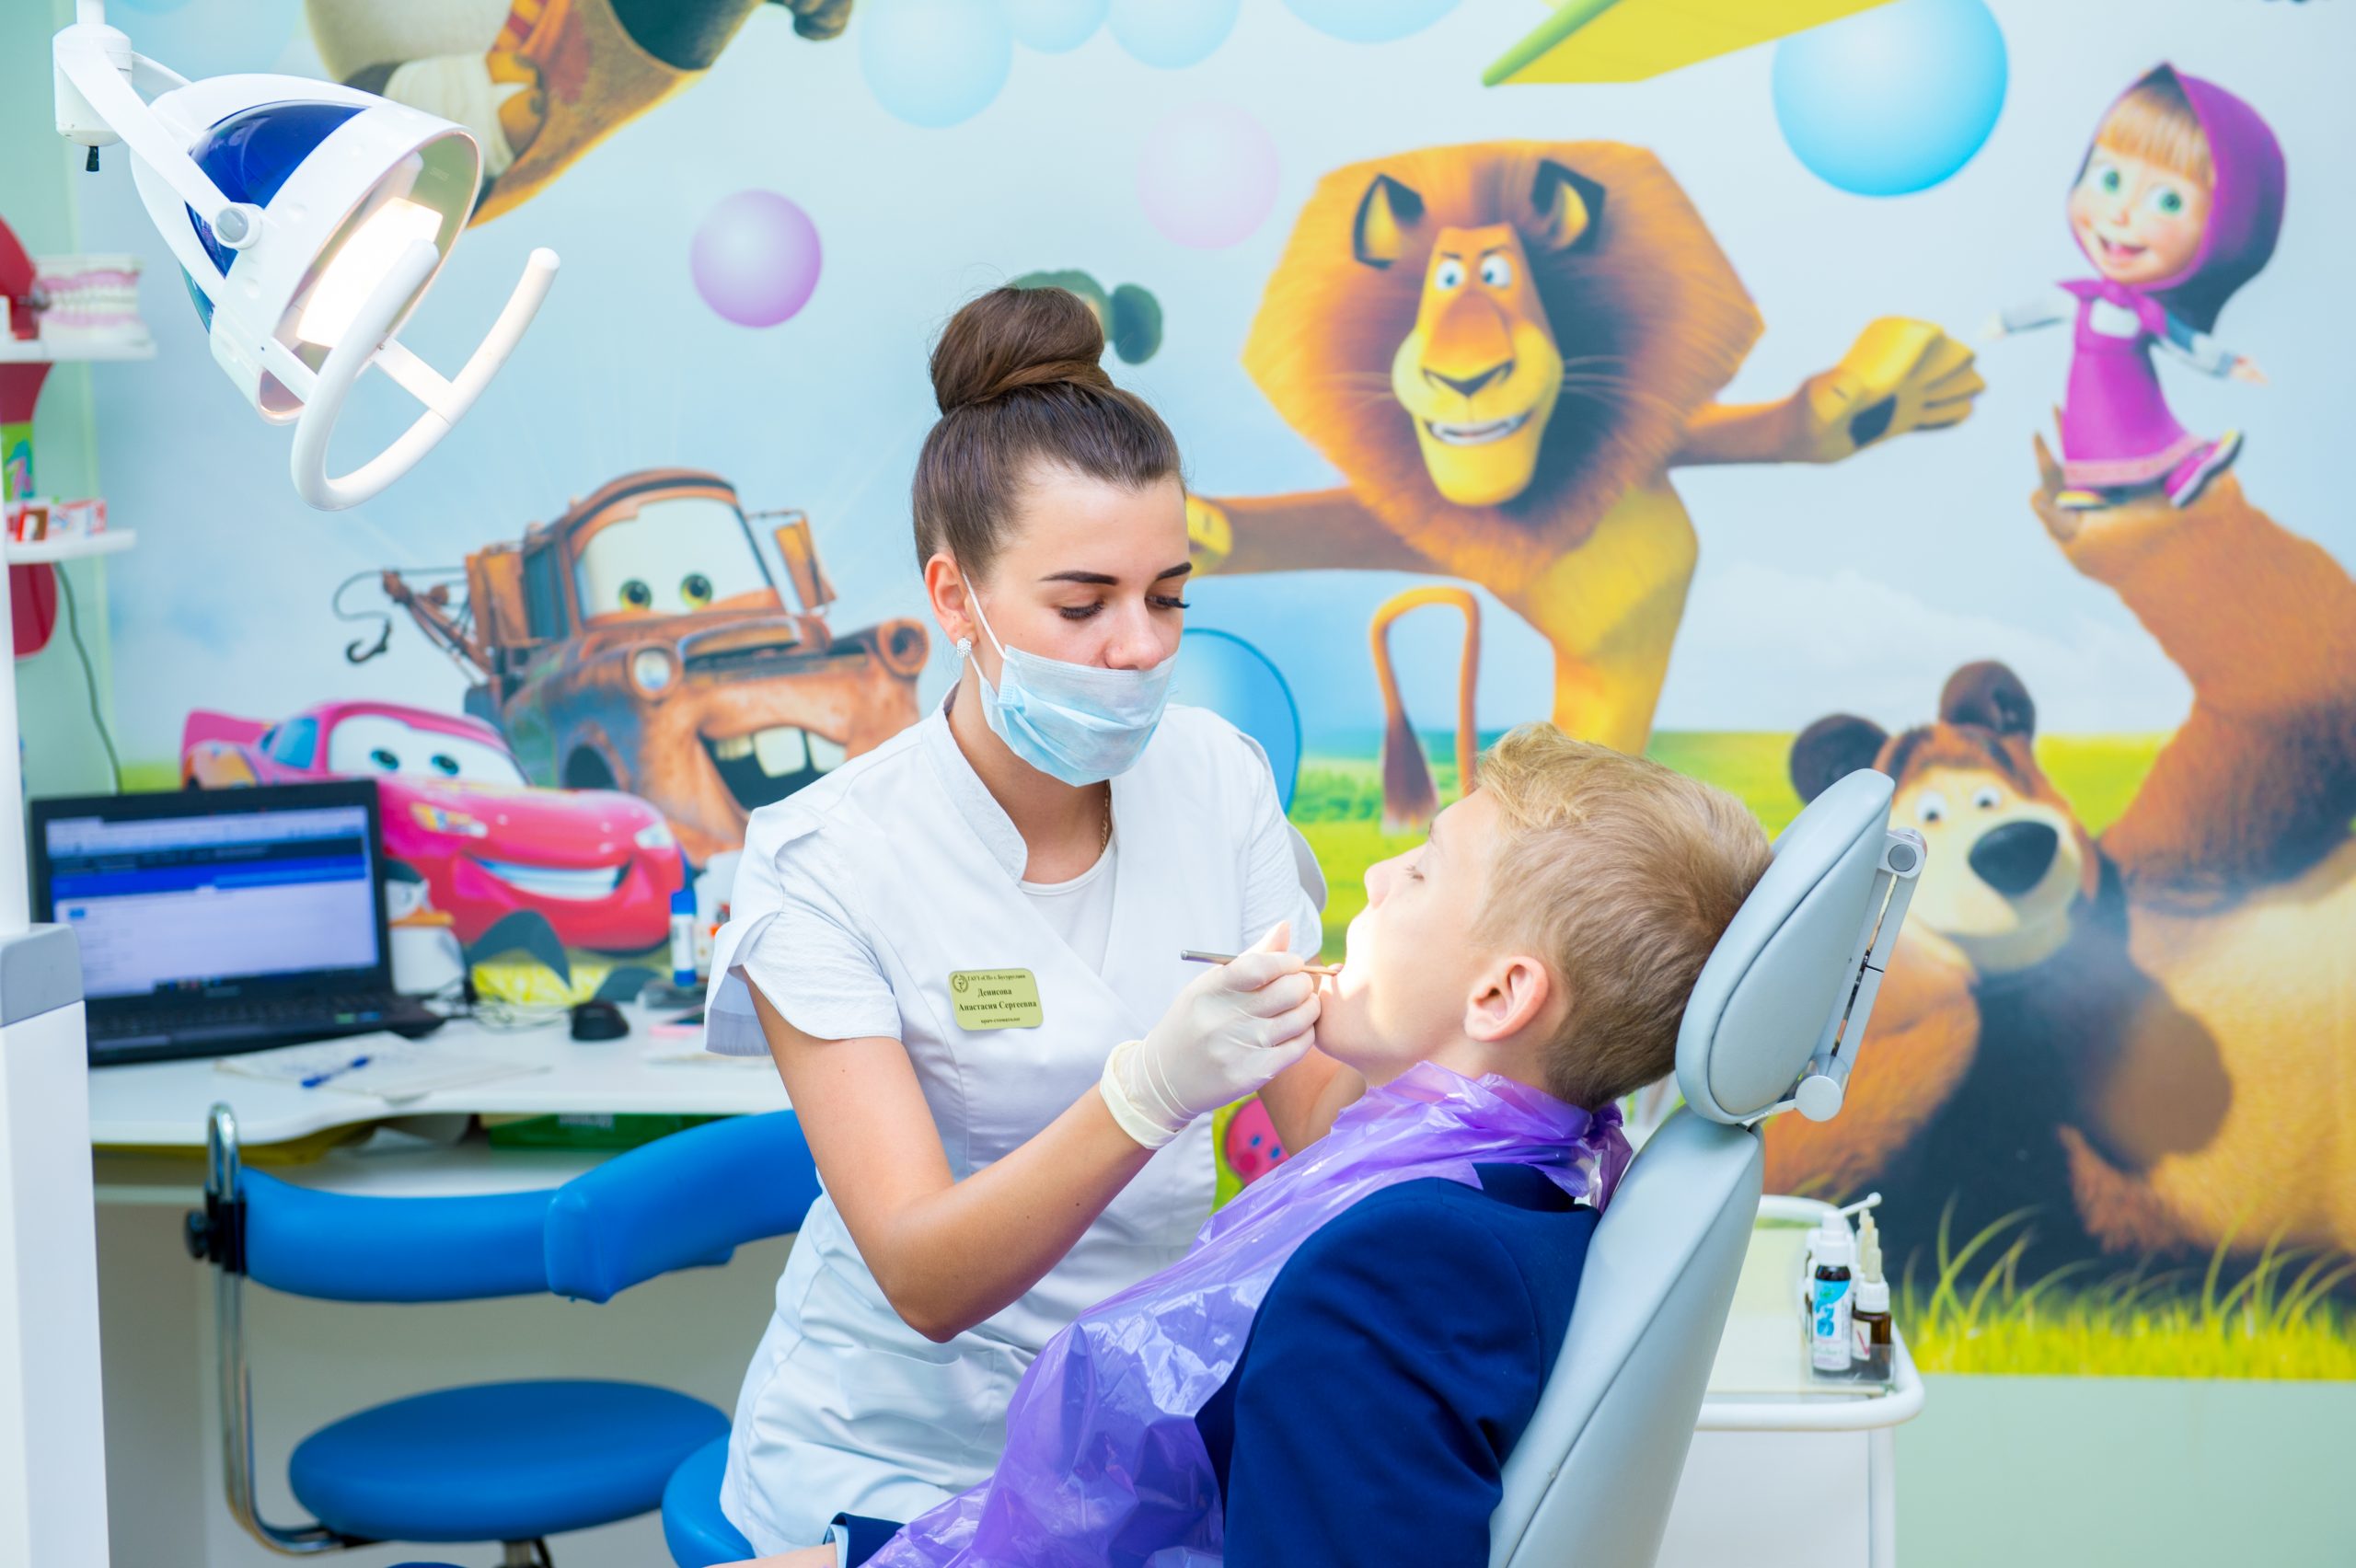 Детская стоматология в Челябинске: забота о здоровье маленьких улыбок